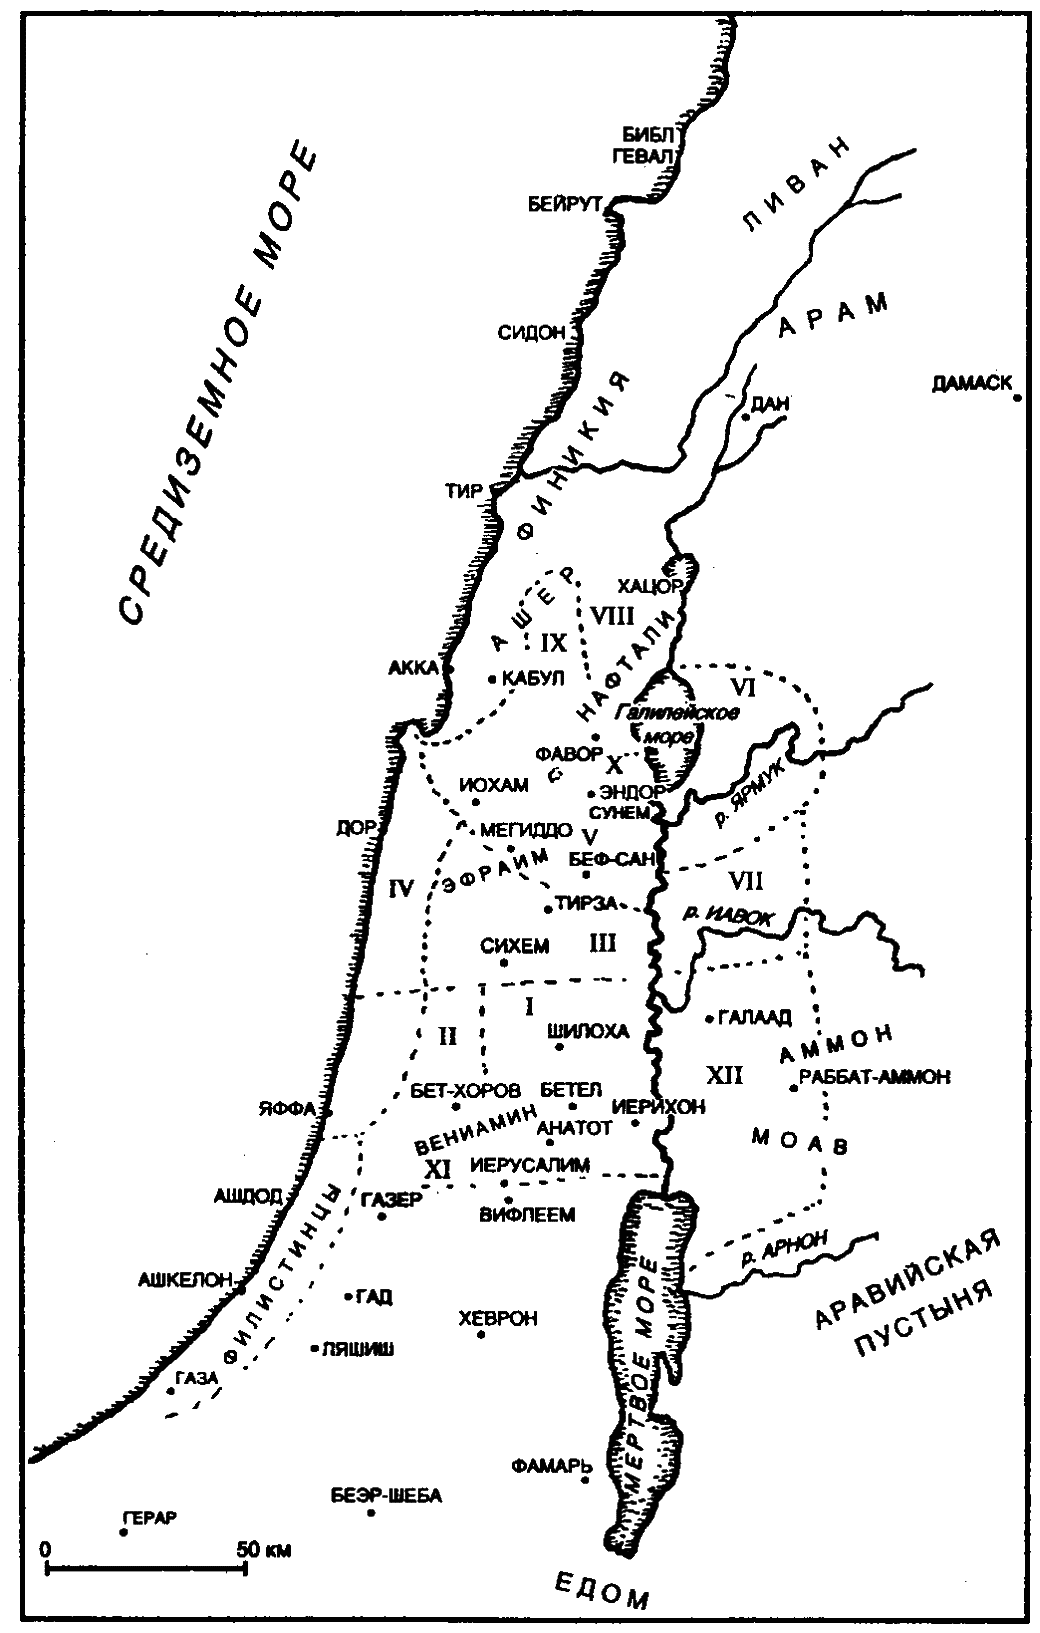 Библ сидон и тир где. Карта Палестины времен Христа. Тир и Сидон Палестина на карте. Генисаретская земля во времена Иисуса.